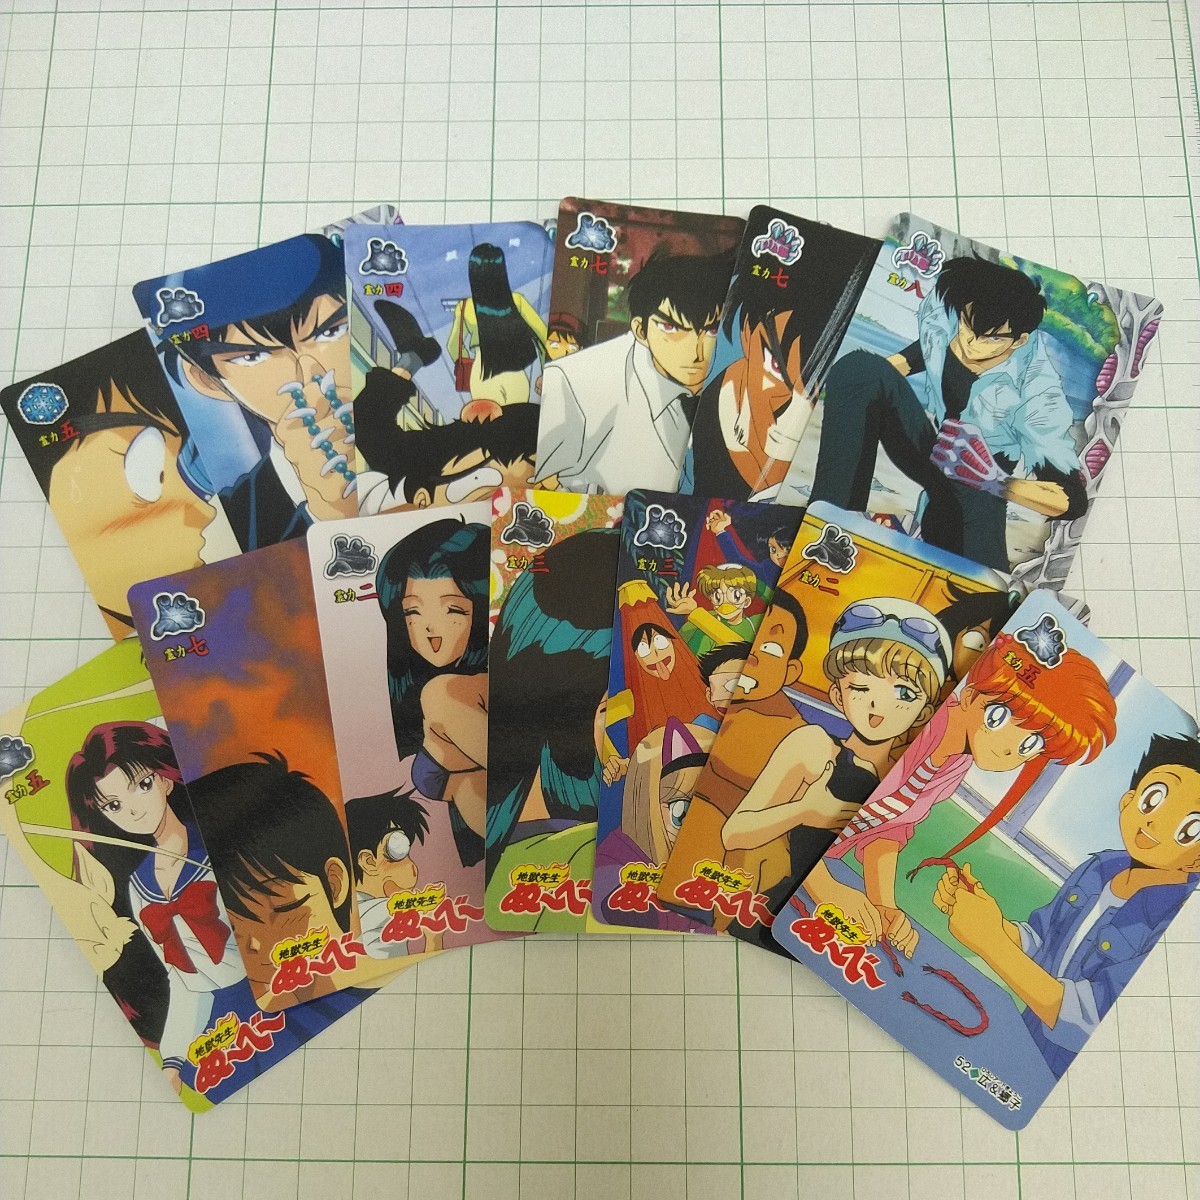  обычный comp Carddas Jigoku Sensei .-.- часть 2 1997 год Bandai BANDAI карта коллекционные карточки Nube Nube подлинная вещь малый 